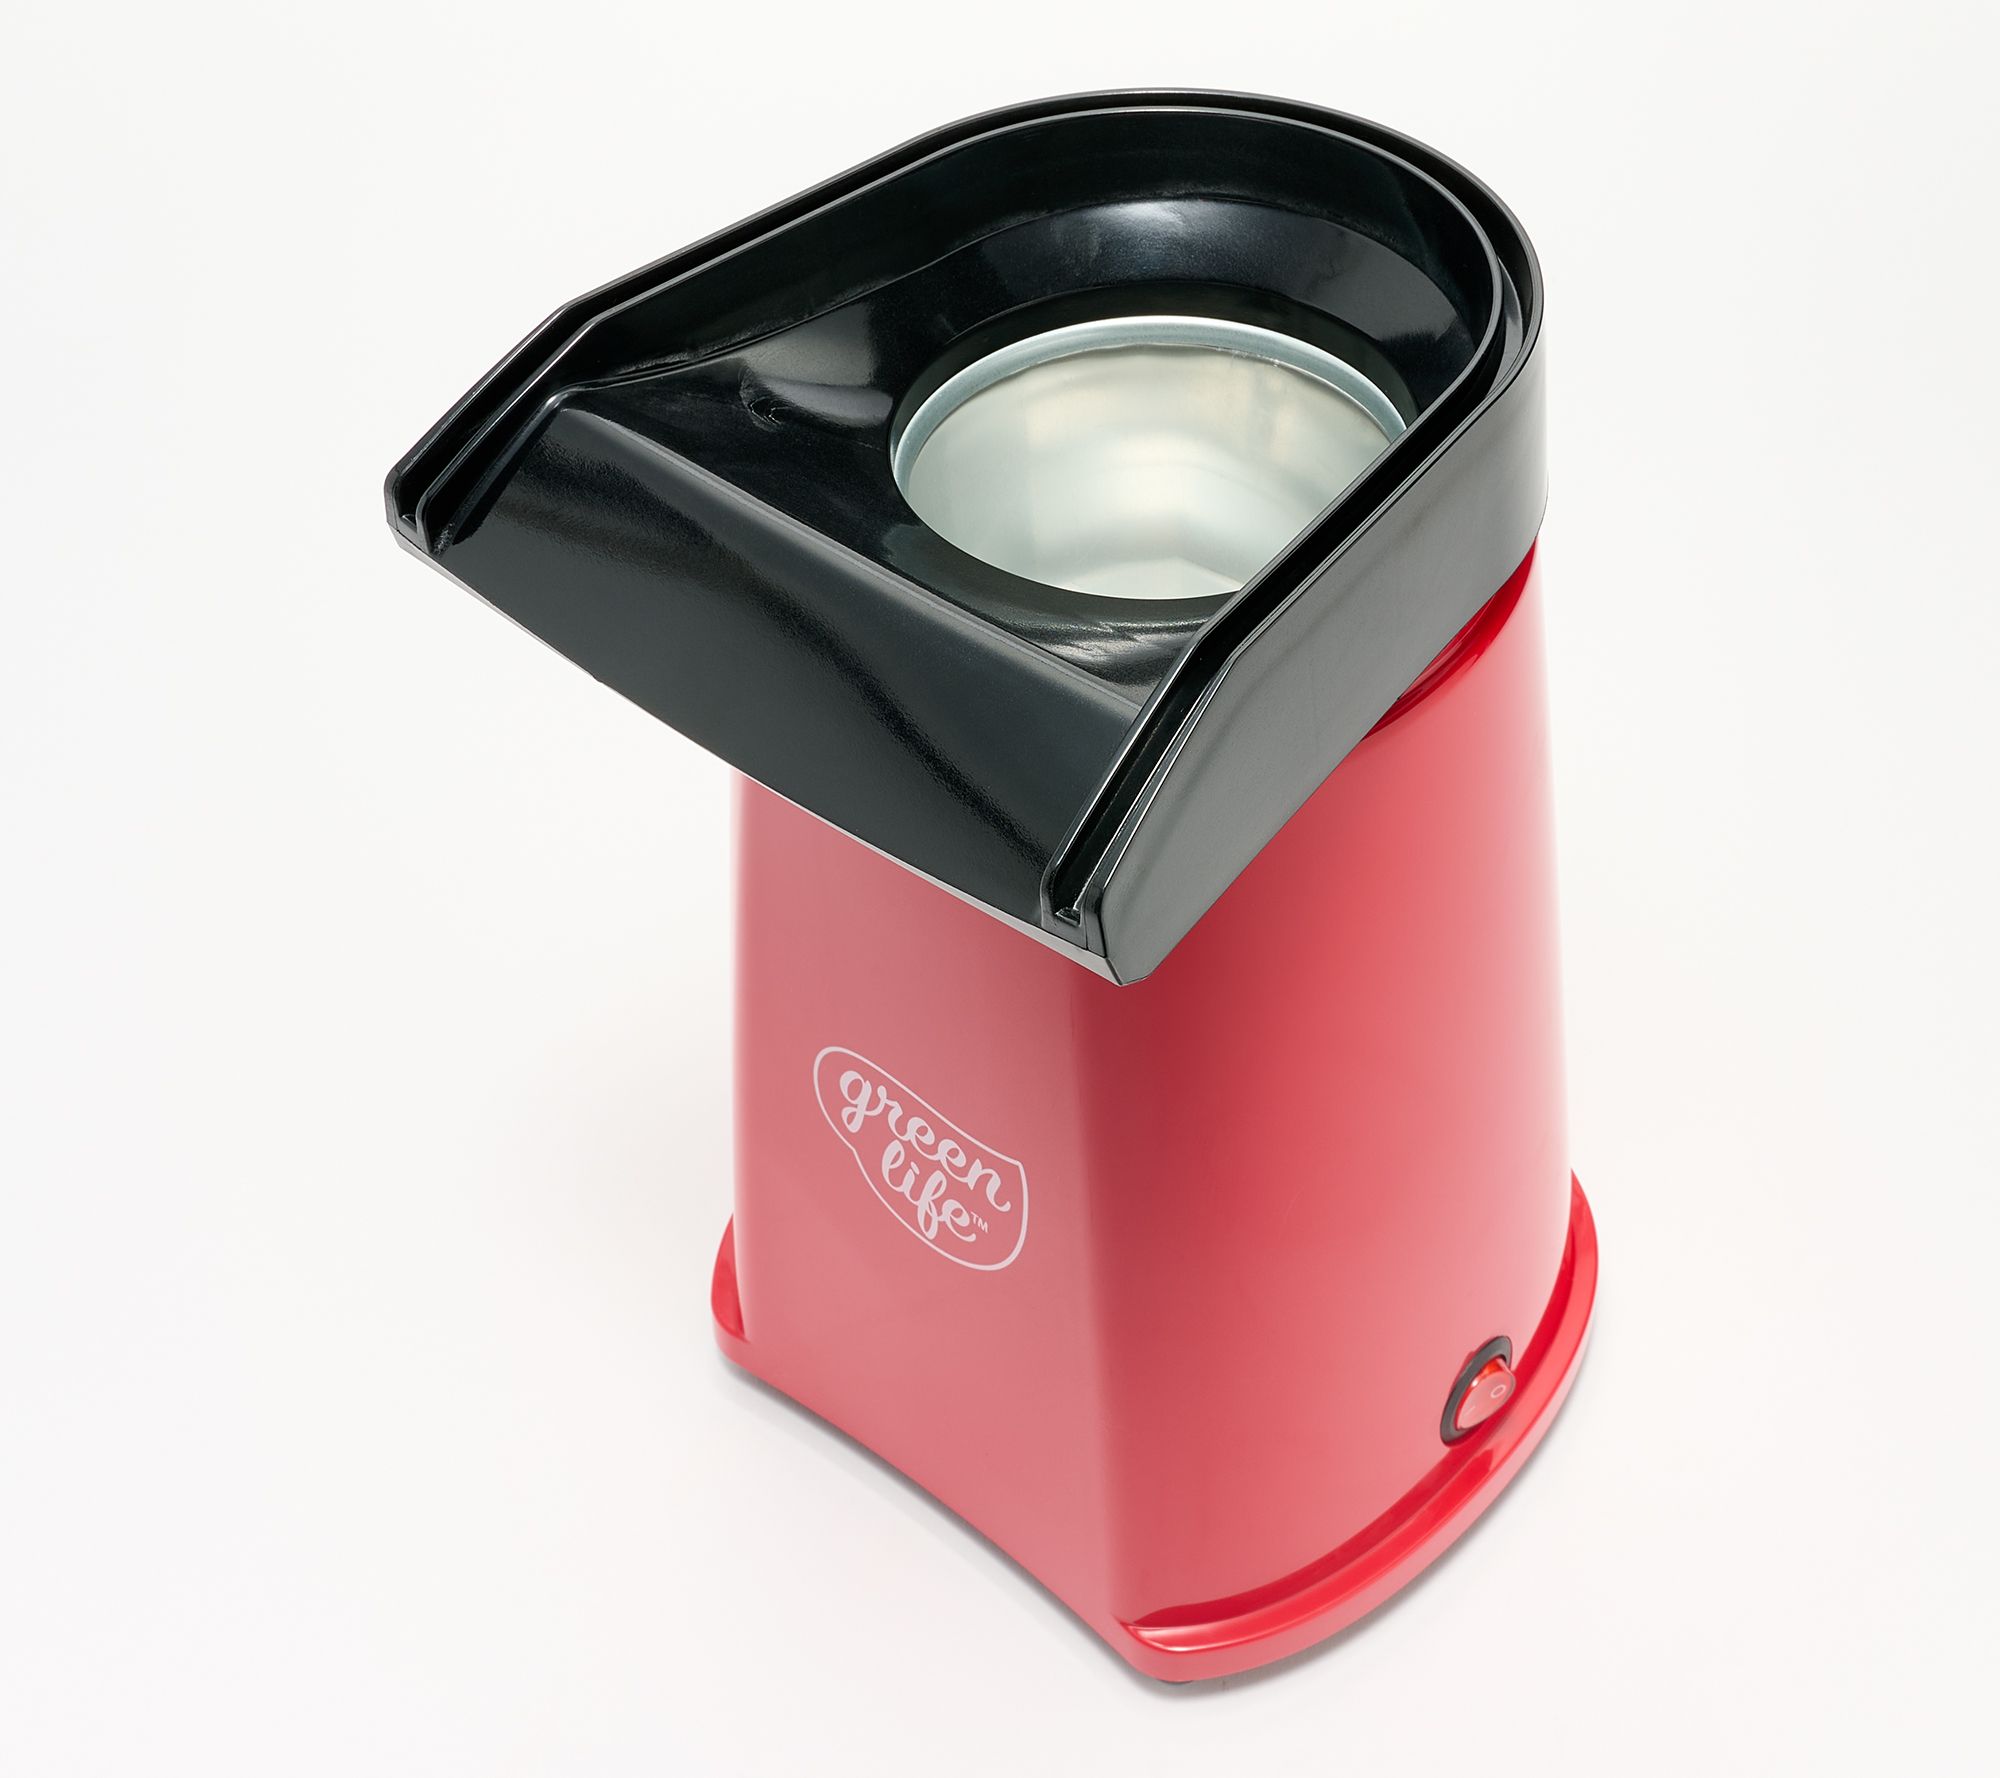 GreenLife 18-Cup Hot Air Popcorn Maker 